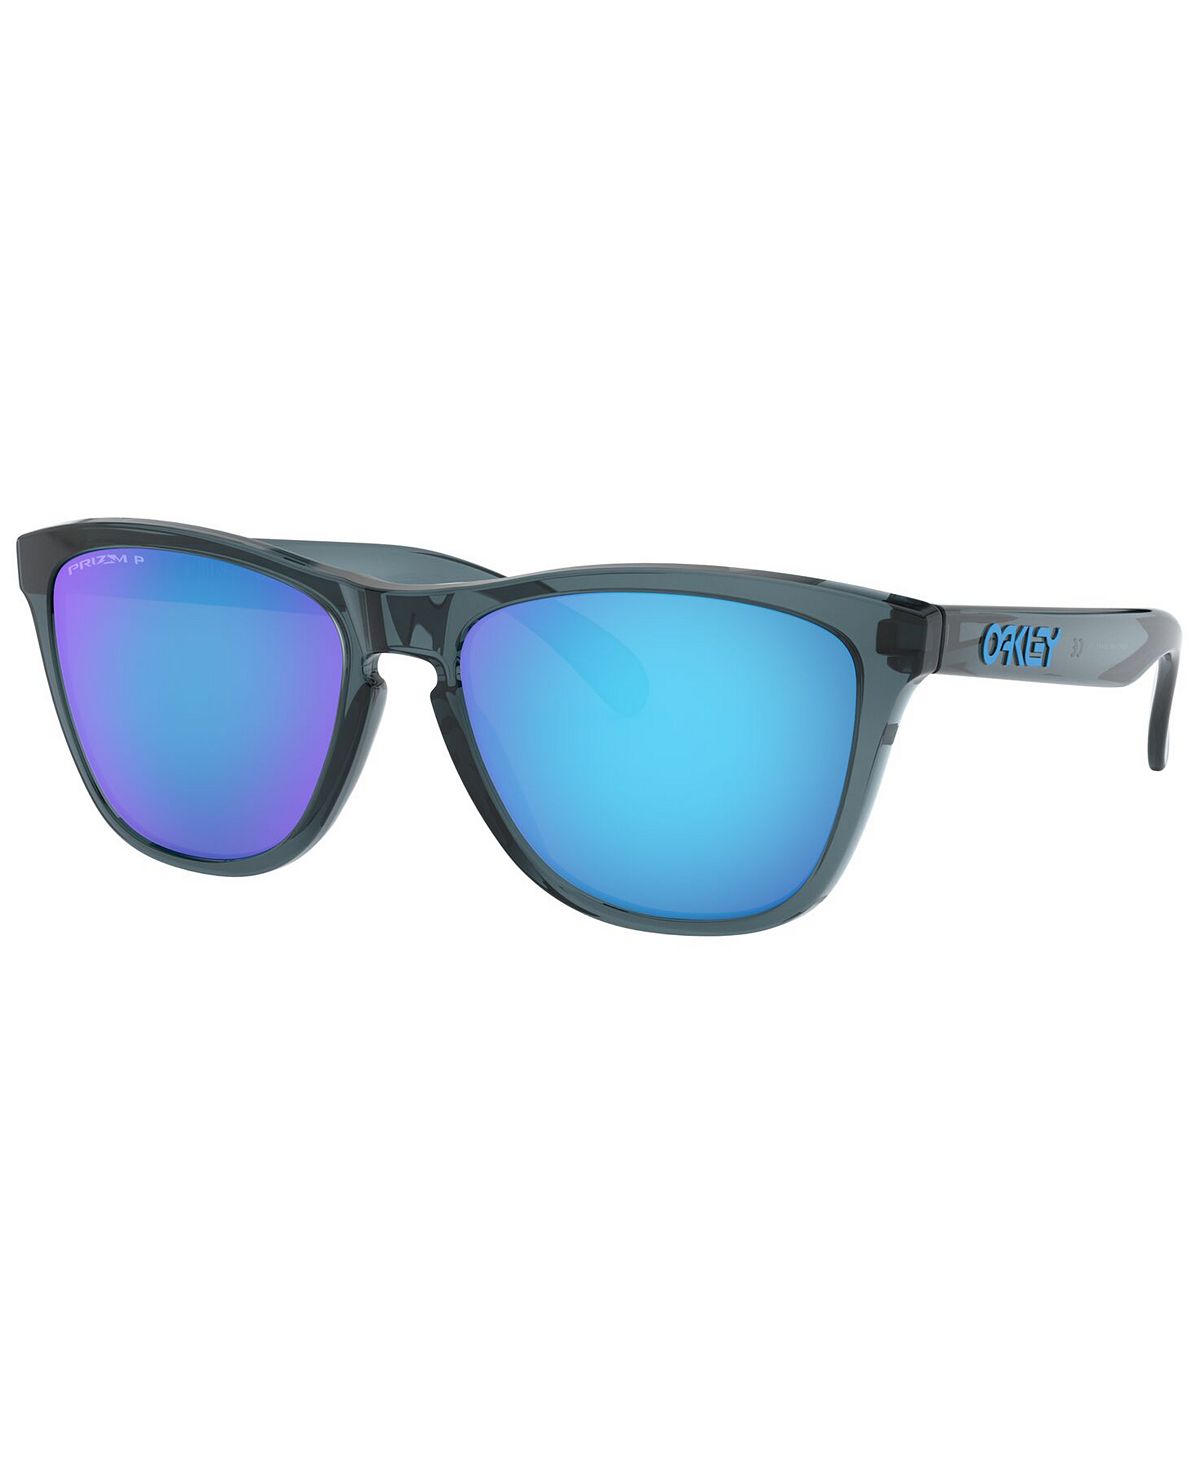 Поляризованные солнцезащитные очки Frogskins, OO9013 55 Oakley цена и фото